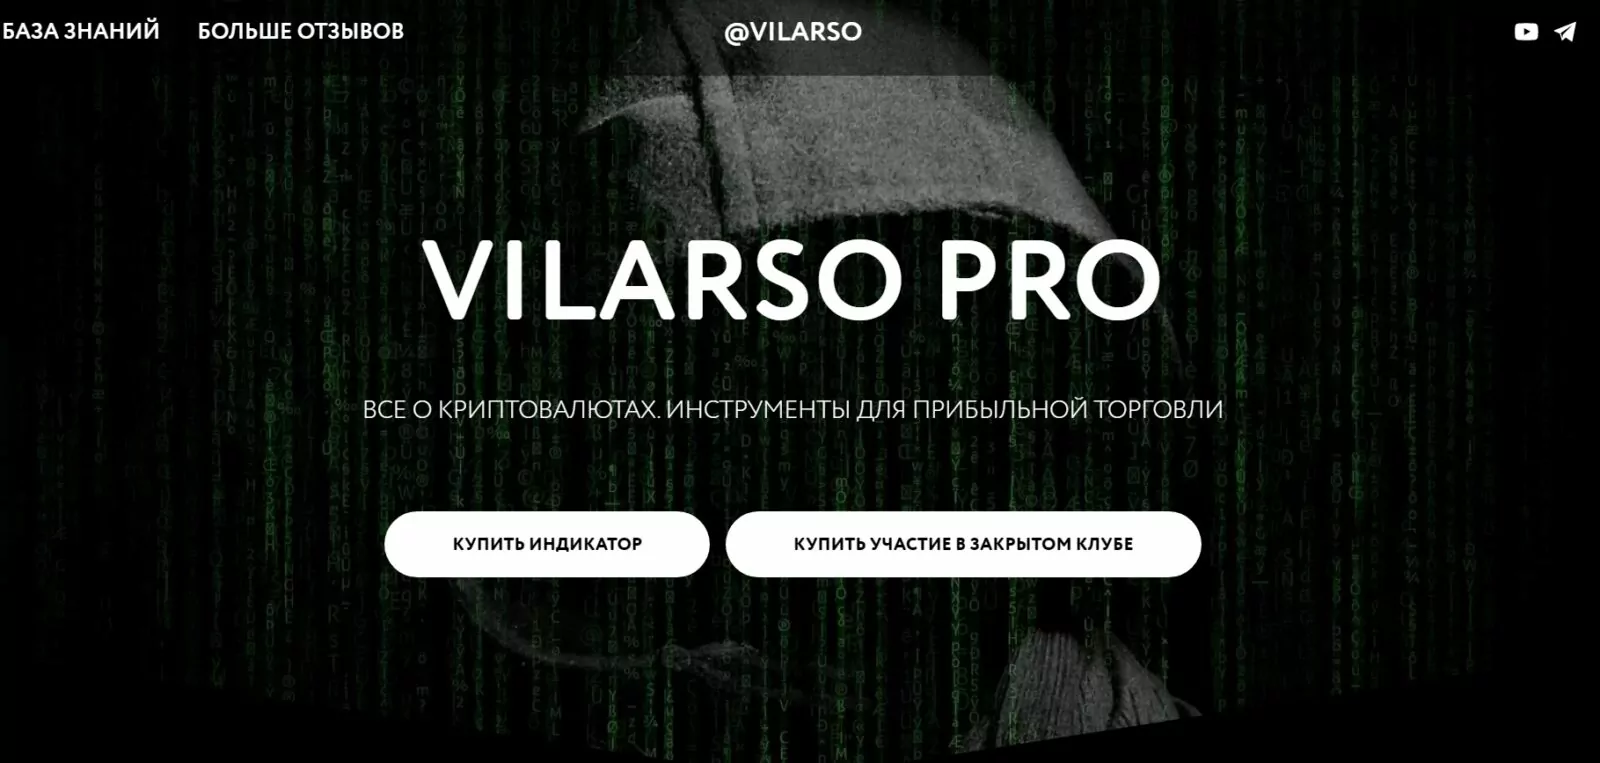 Vilarso – трейдерский канал